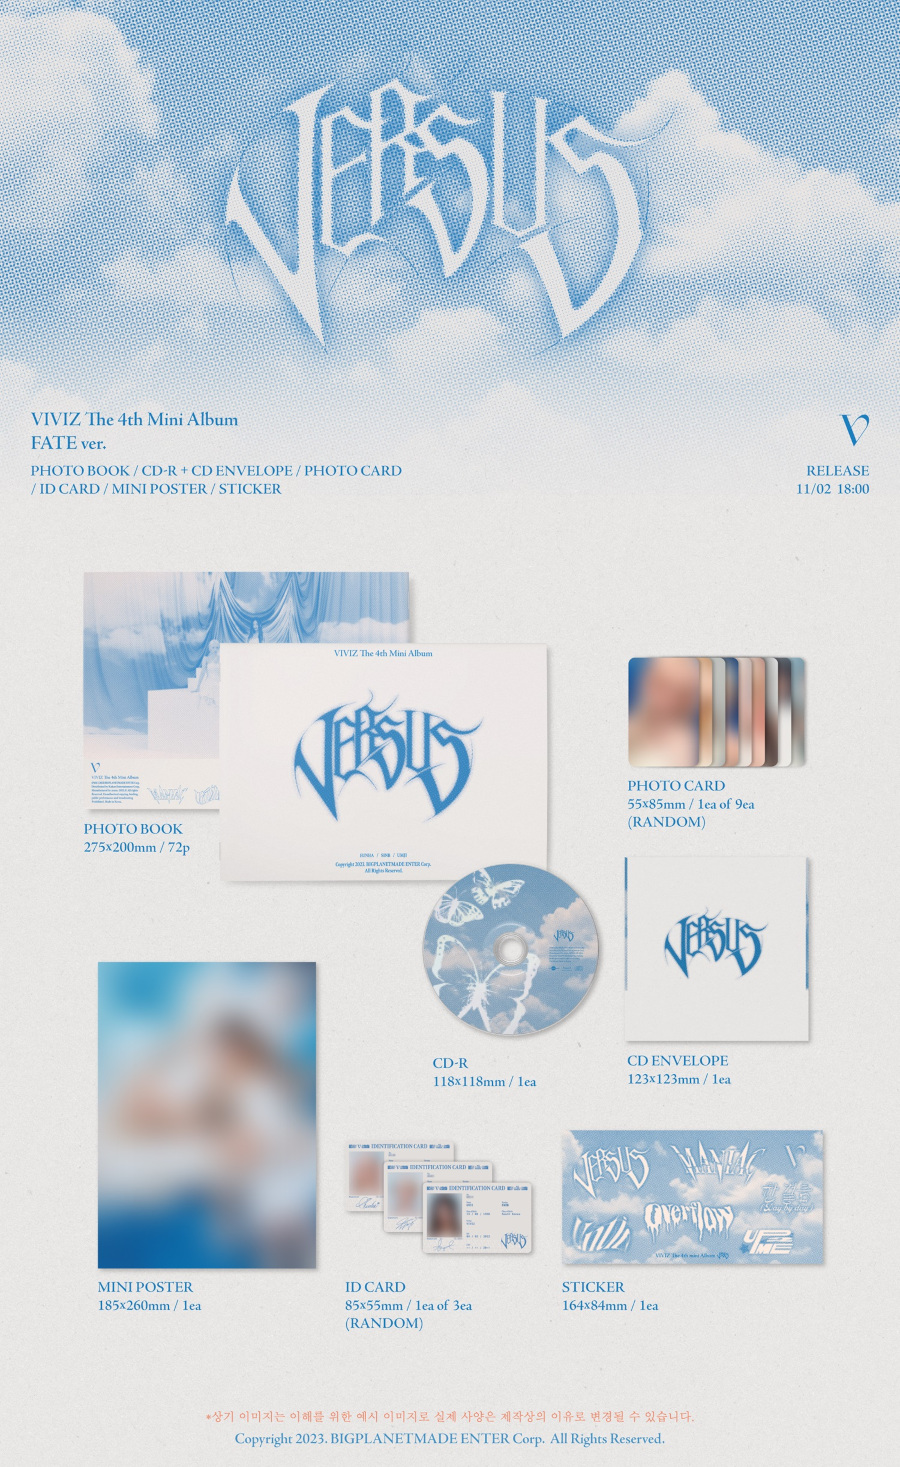 VIVIZ(비비지) - The 4th Mini Album ‘VERSUS’ (Photobook) [FATE ver.]